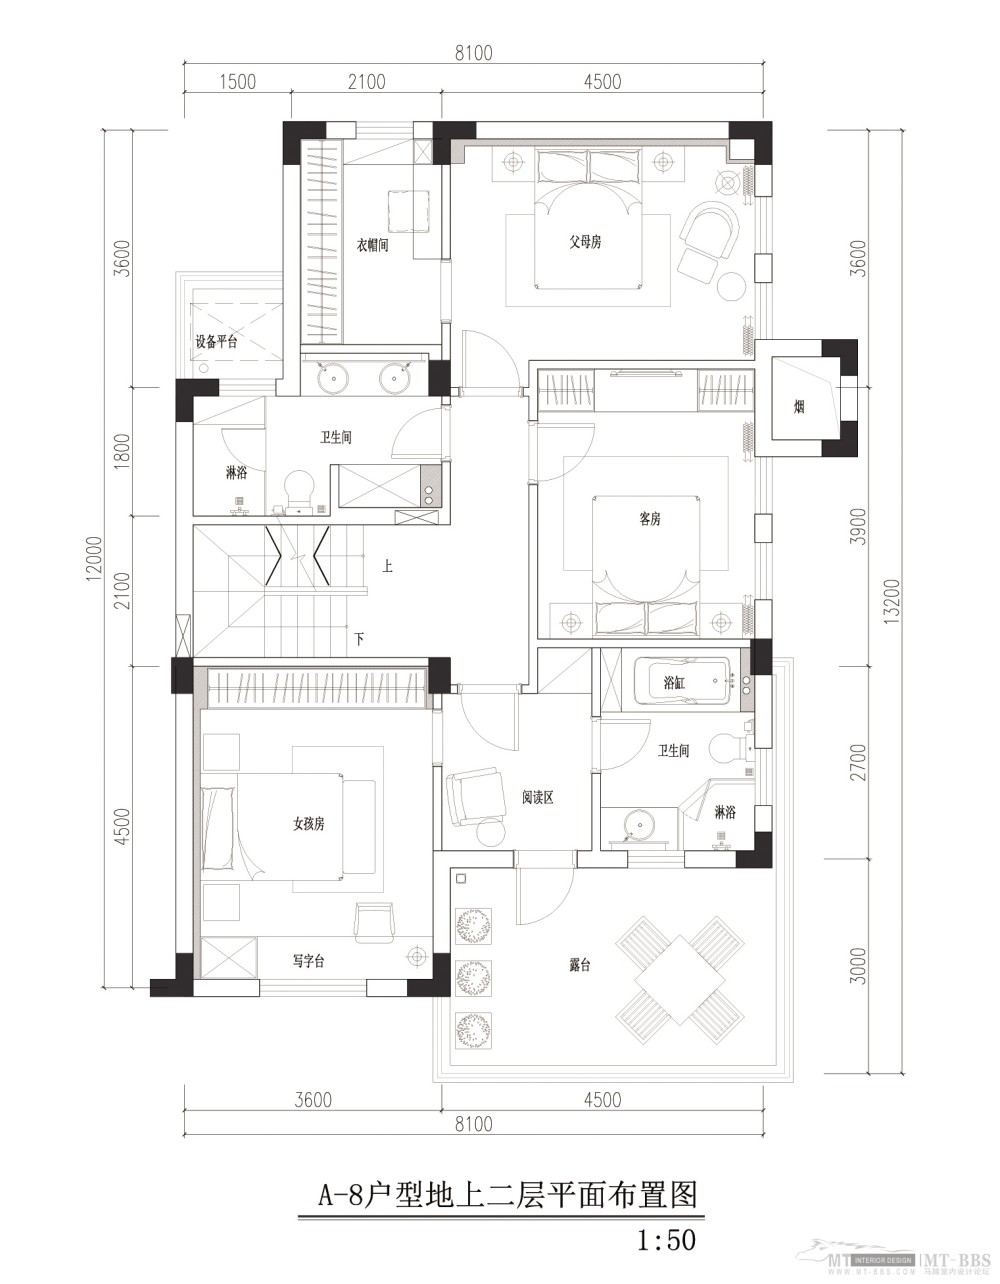 最新样板房设计_03-美式新古典地上二层.jpg